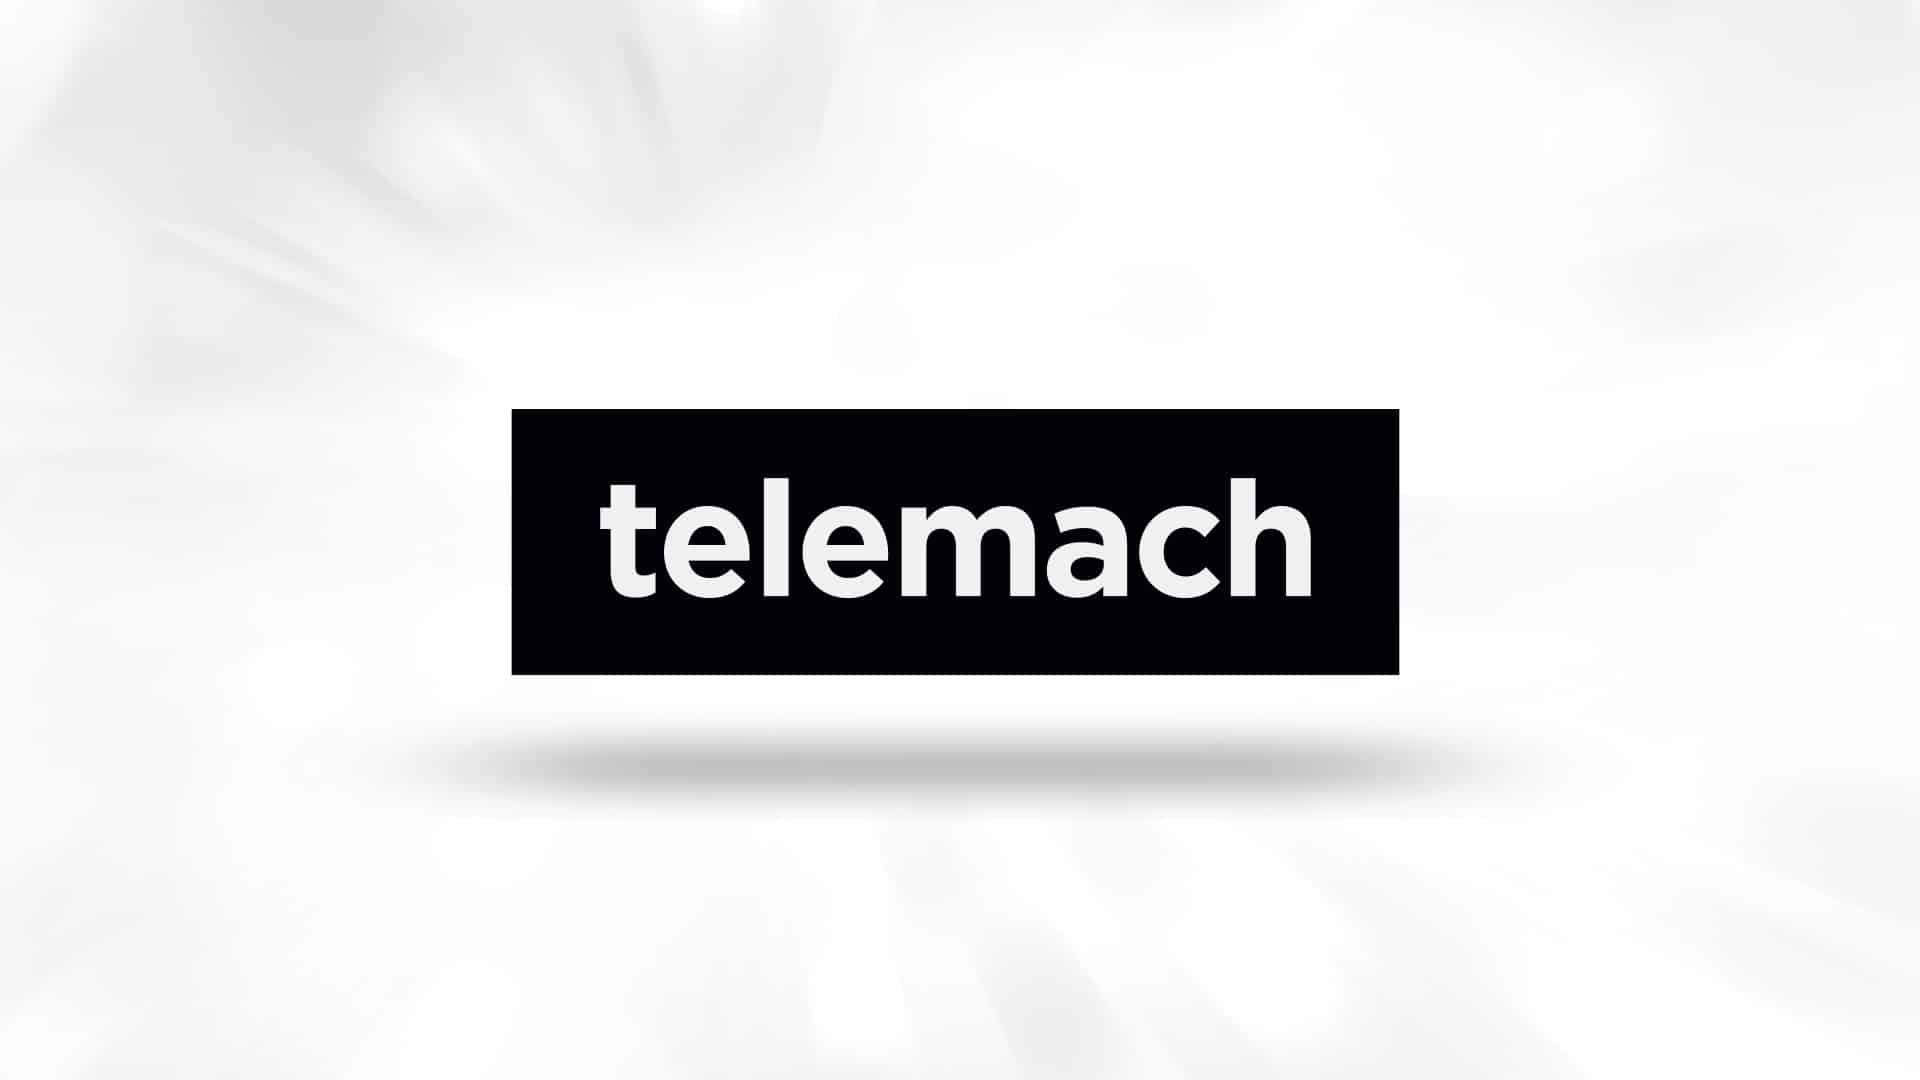 Telemach BH omogućio besplatne pozive prema Covid call centru svim građanima